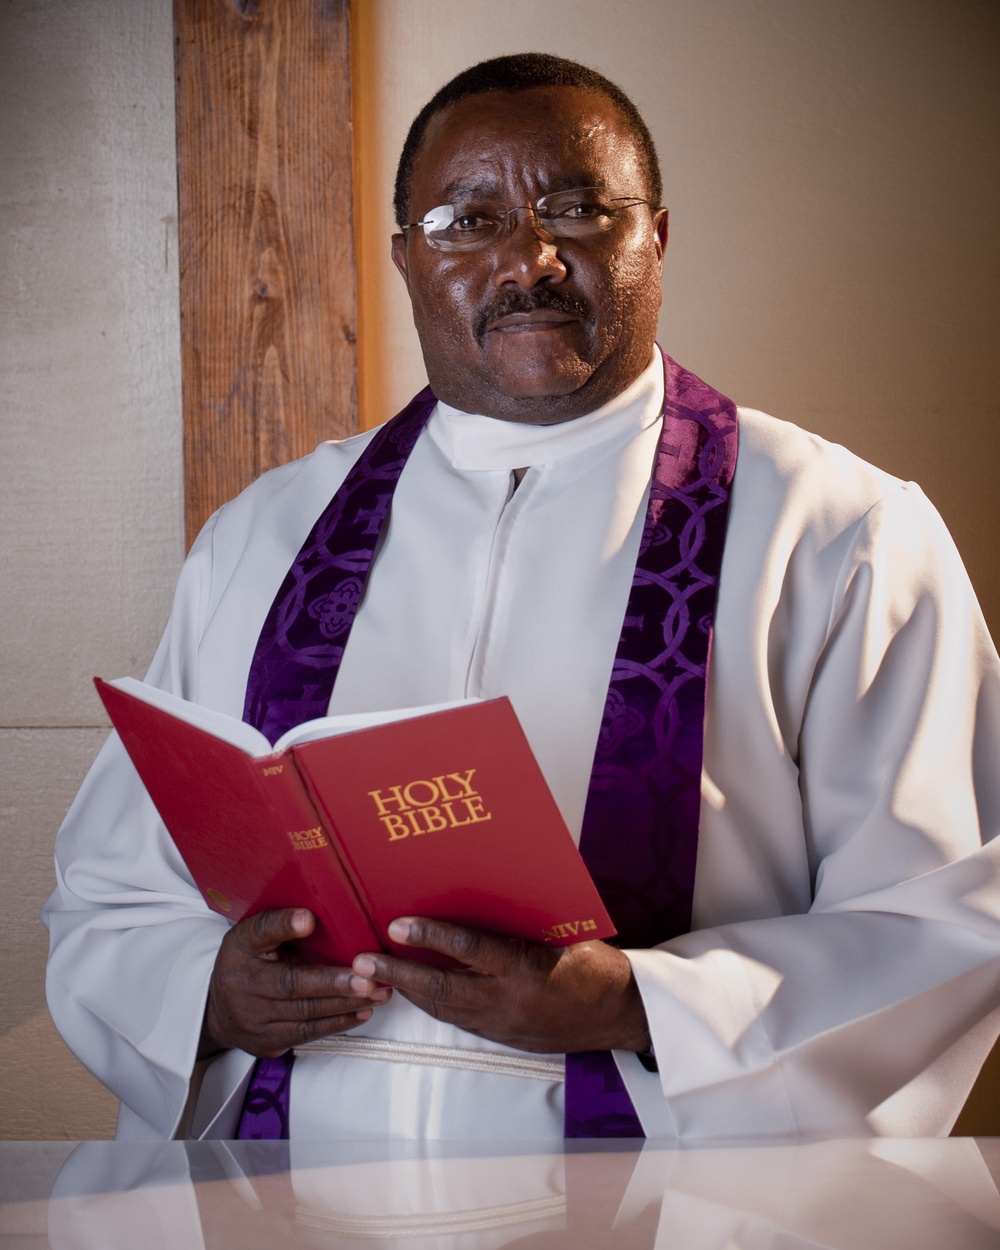 Speaking to Mountains: Kenyan chaplain visits Camp Lemonnier